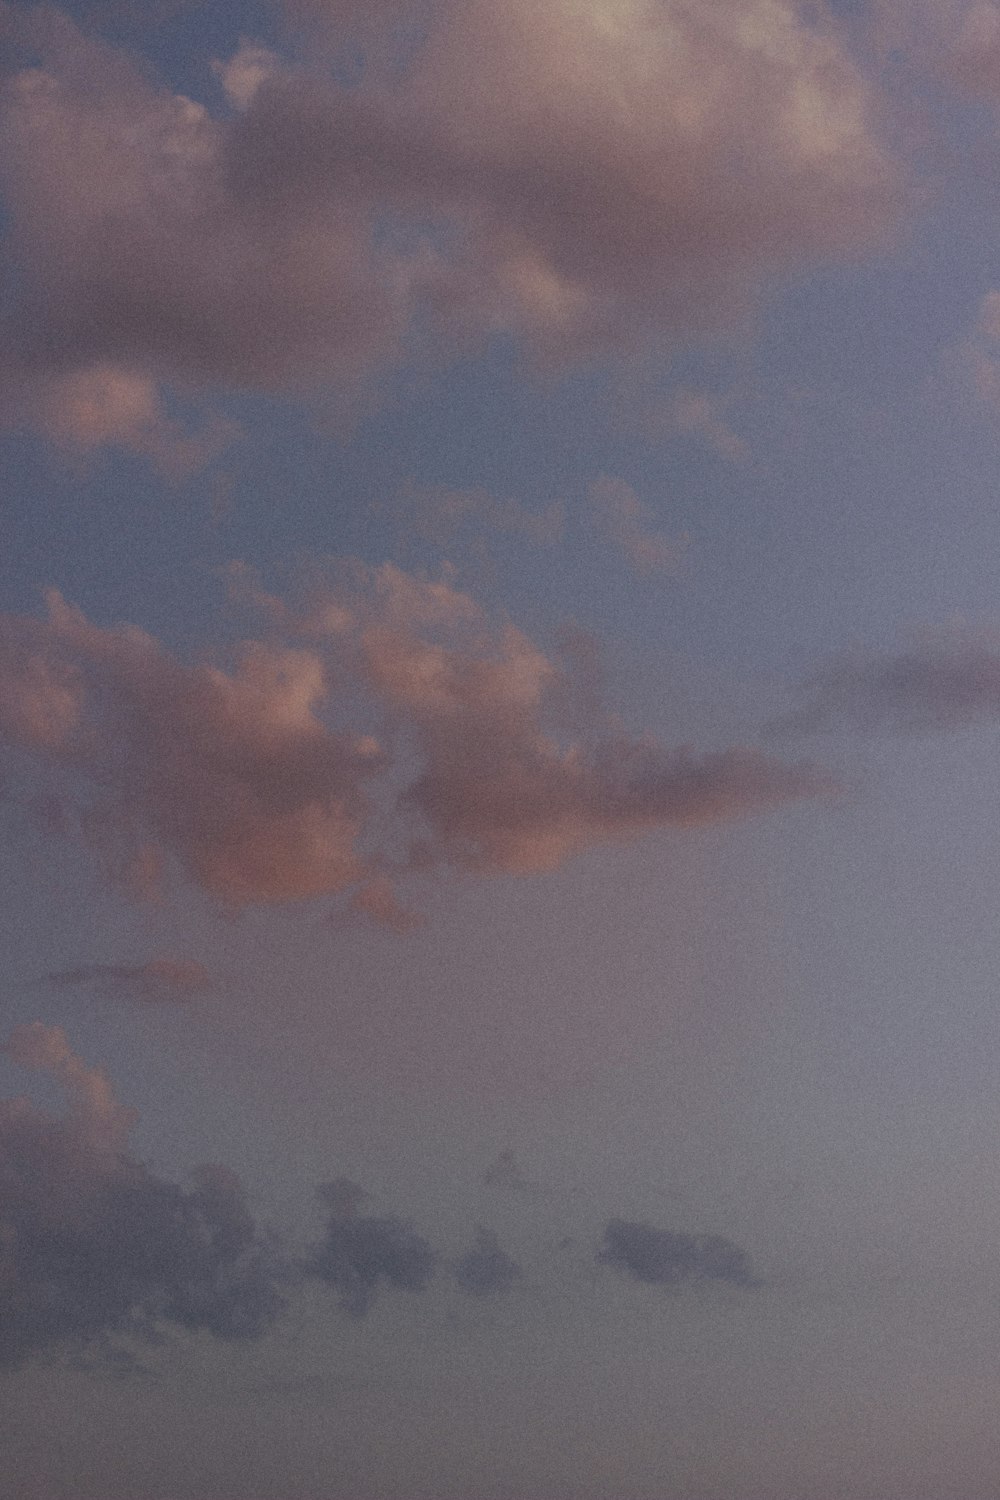 Un avión volando en el cielo con nubes en el fondo